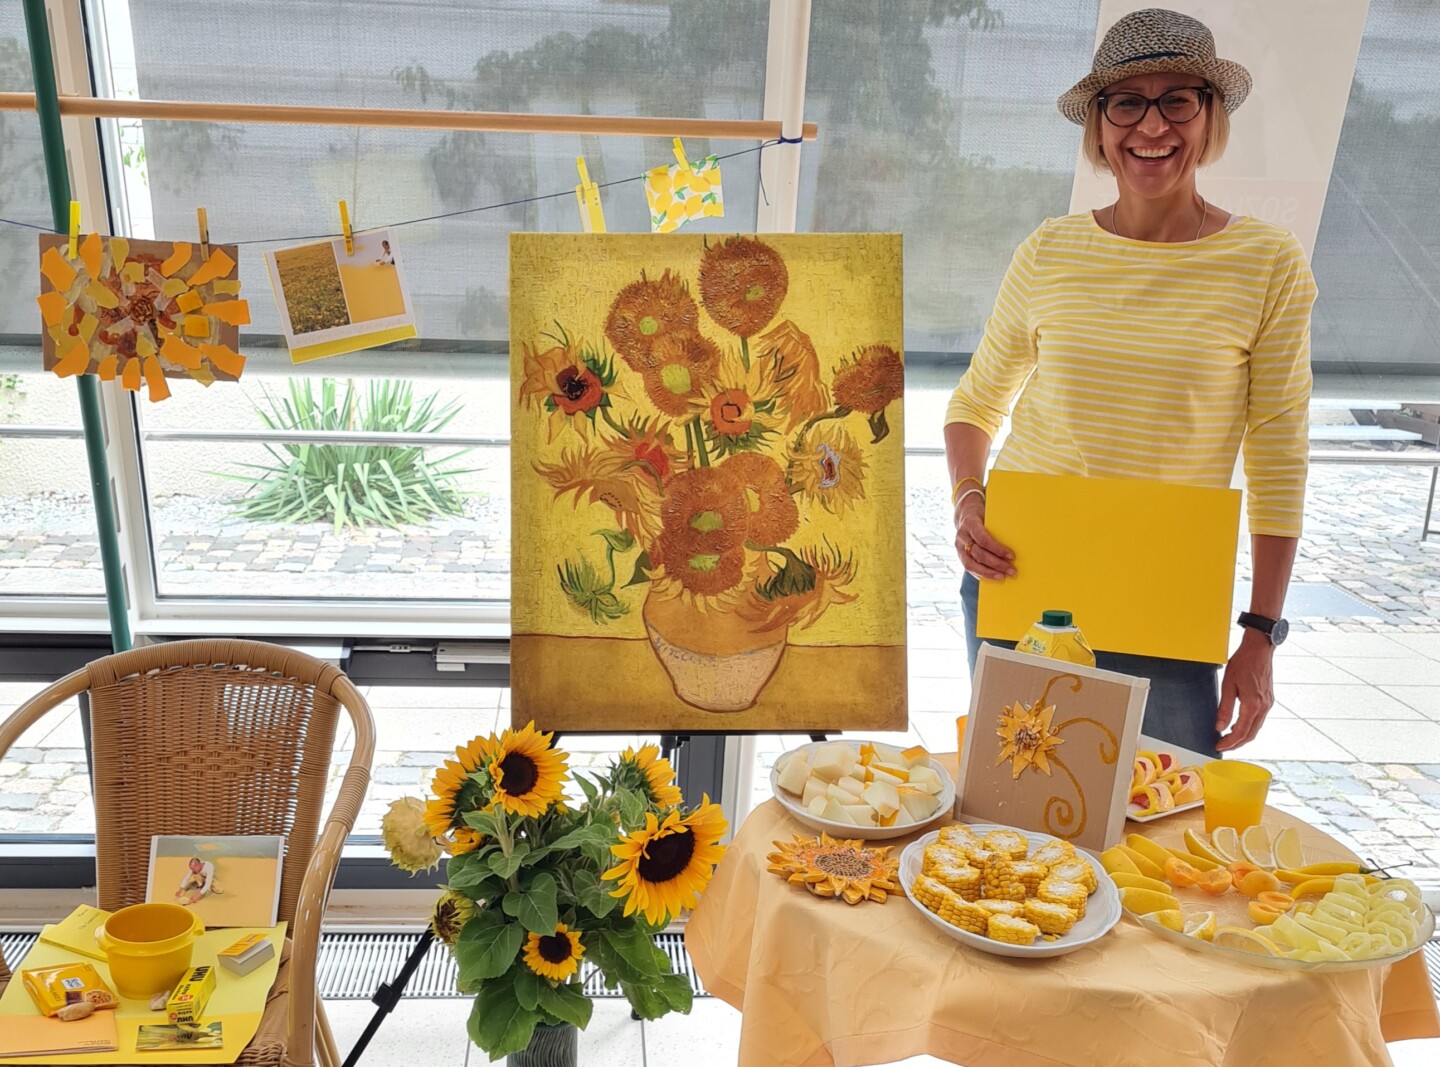 Petra Kellermann steht zwischen Gegenständen zur Farbe Gelb und einem Gemälde mit Sonnenblumen